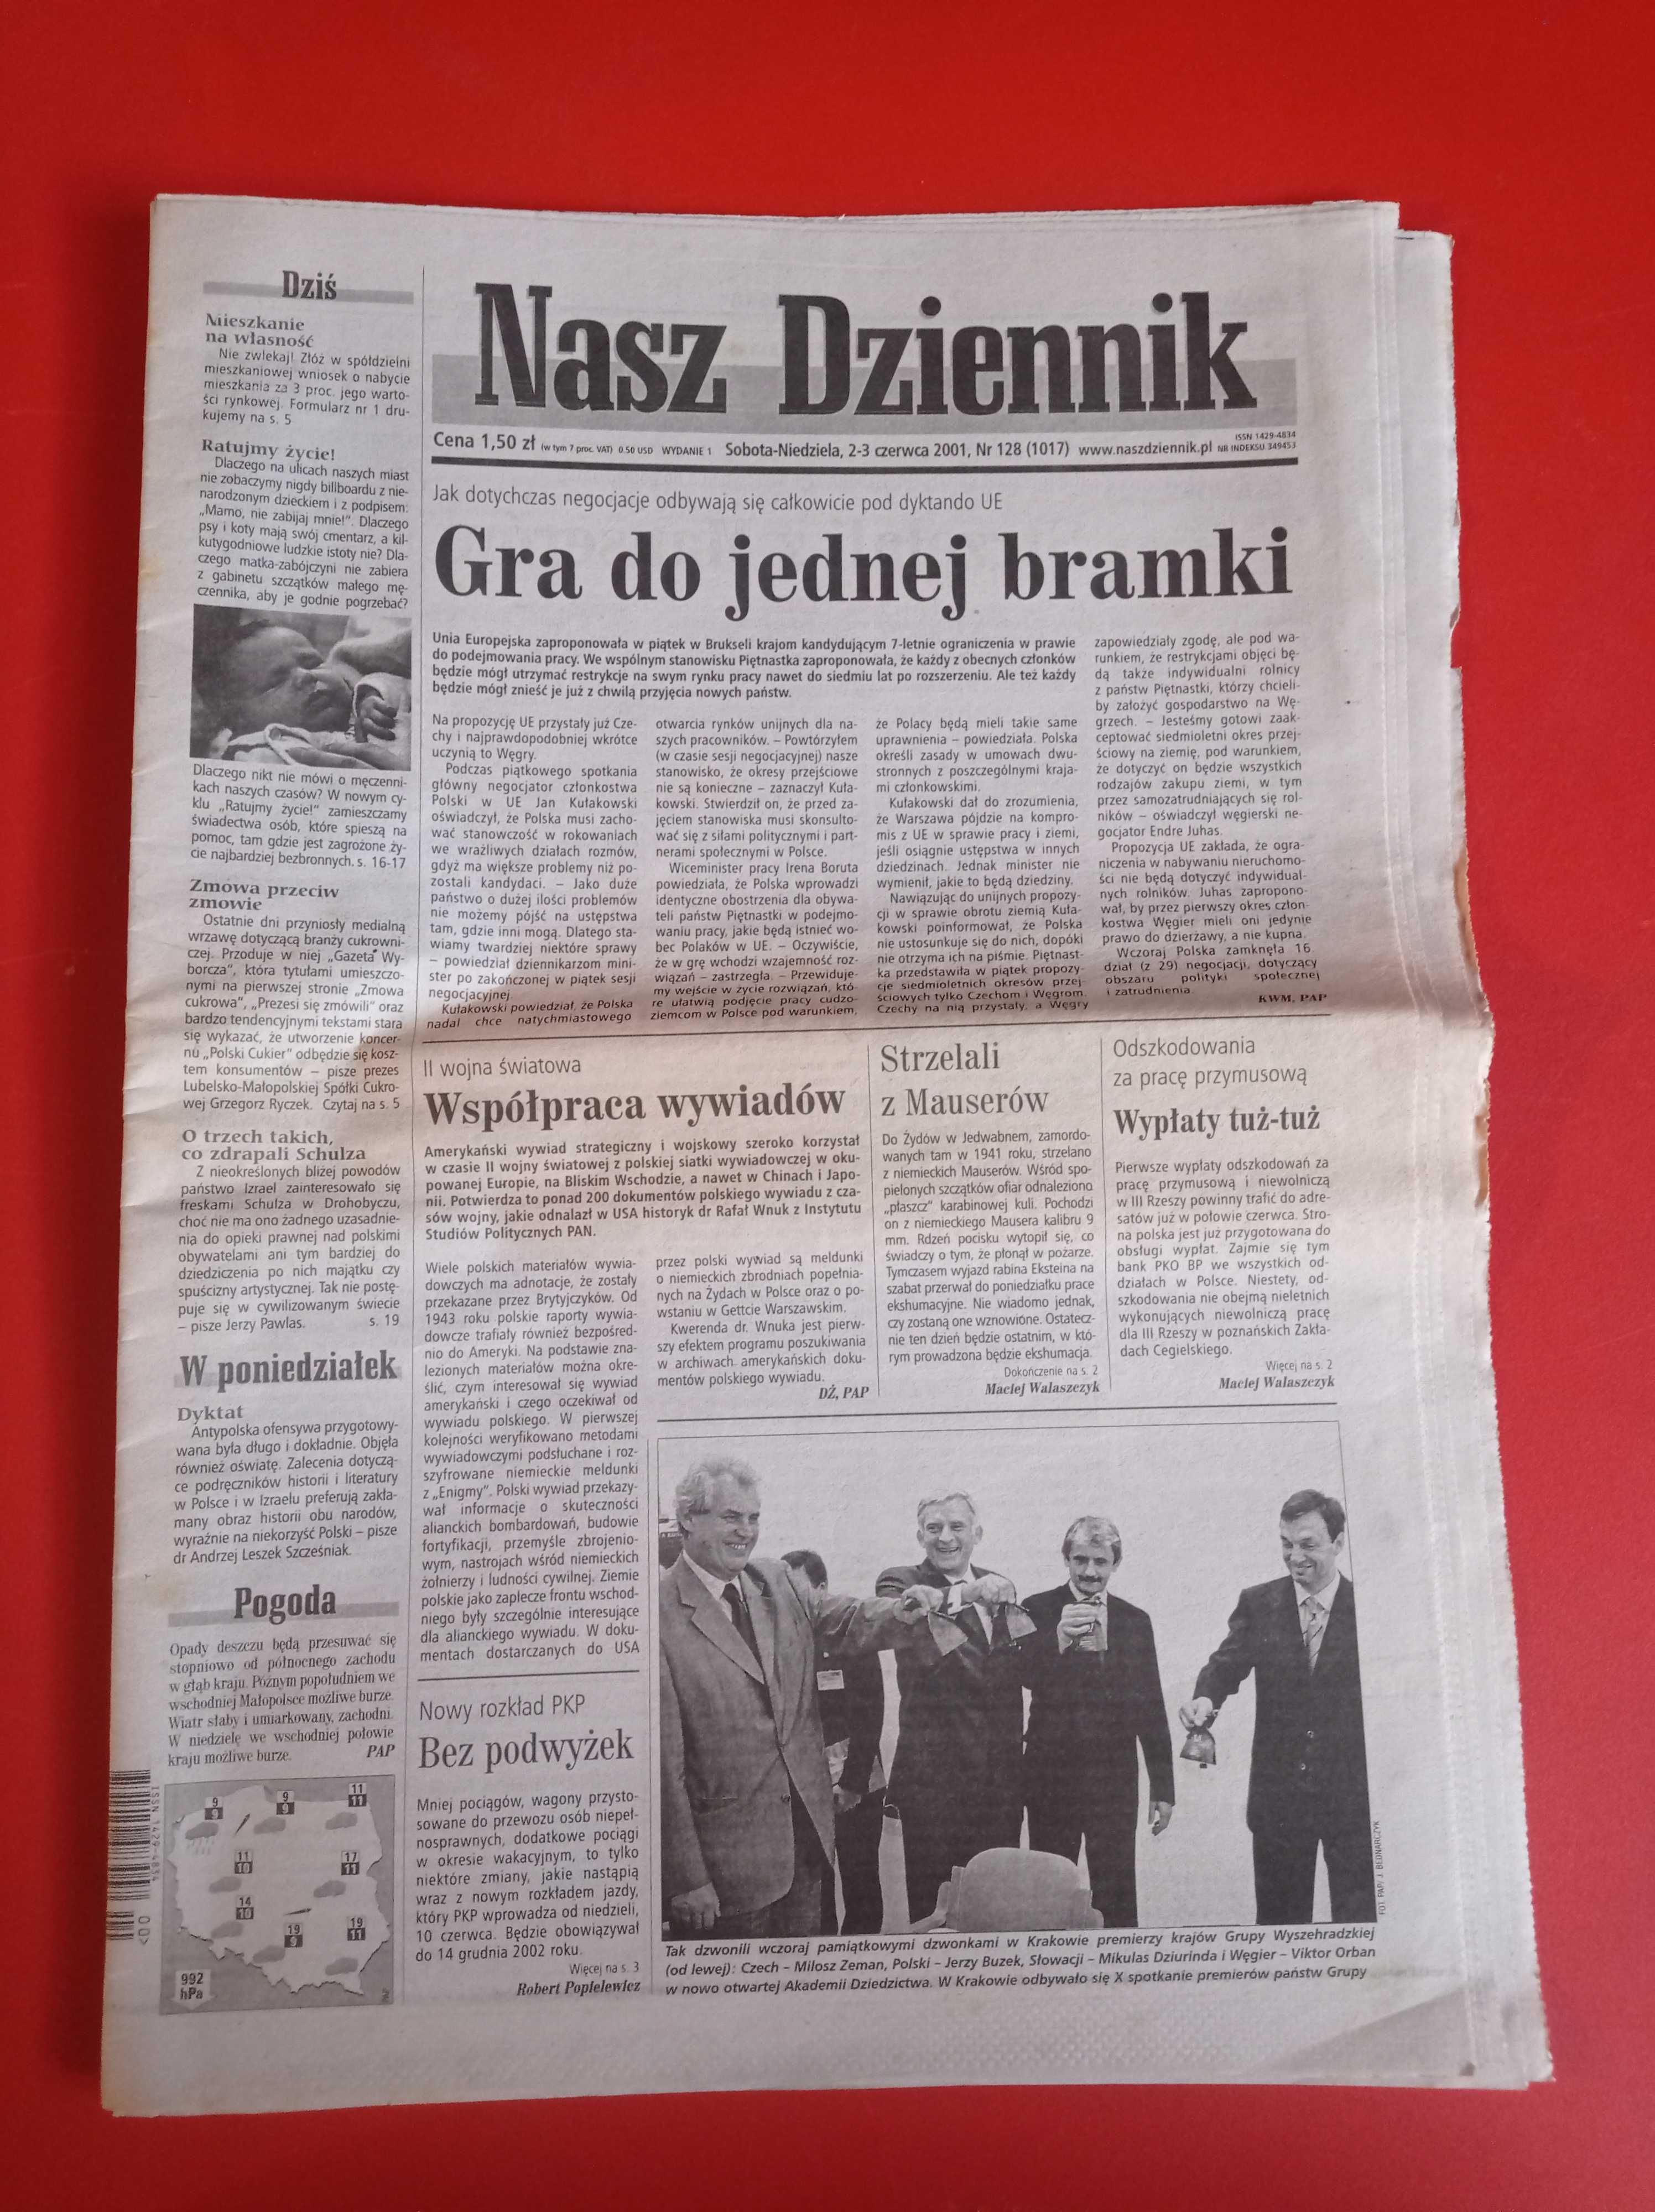 Nasz Dziennik, nr 128/2001, 2-3 czerwca 2001